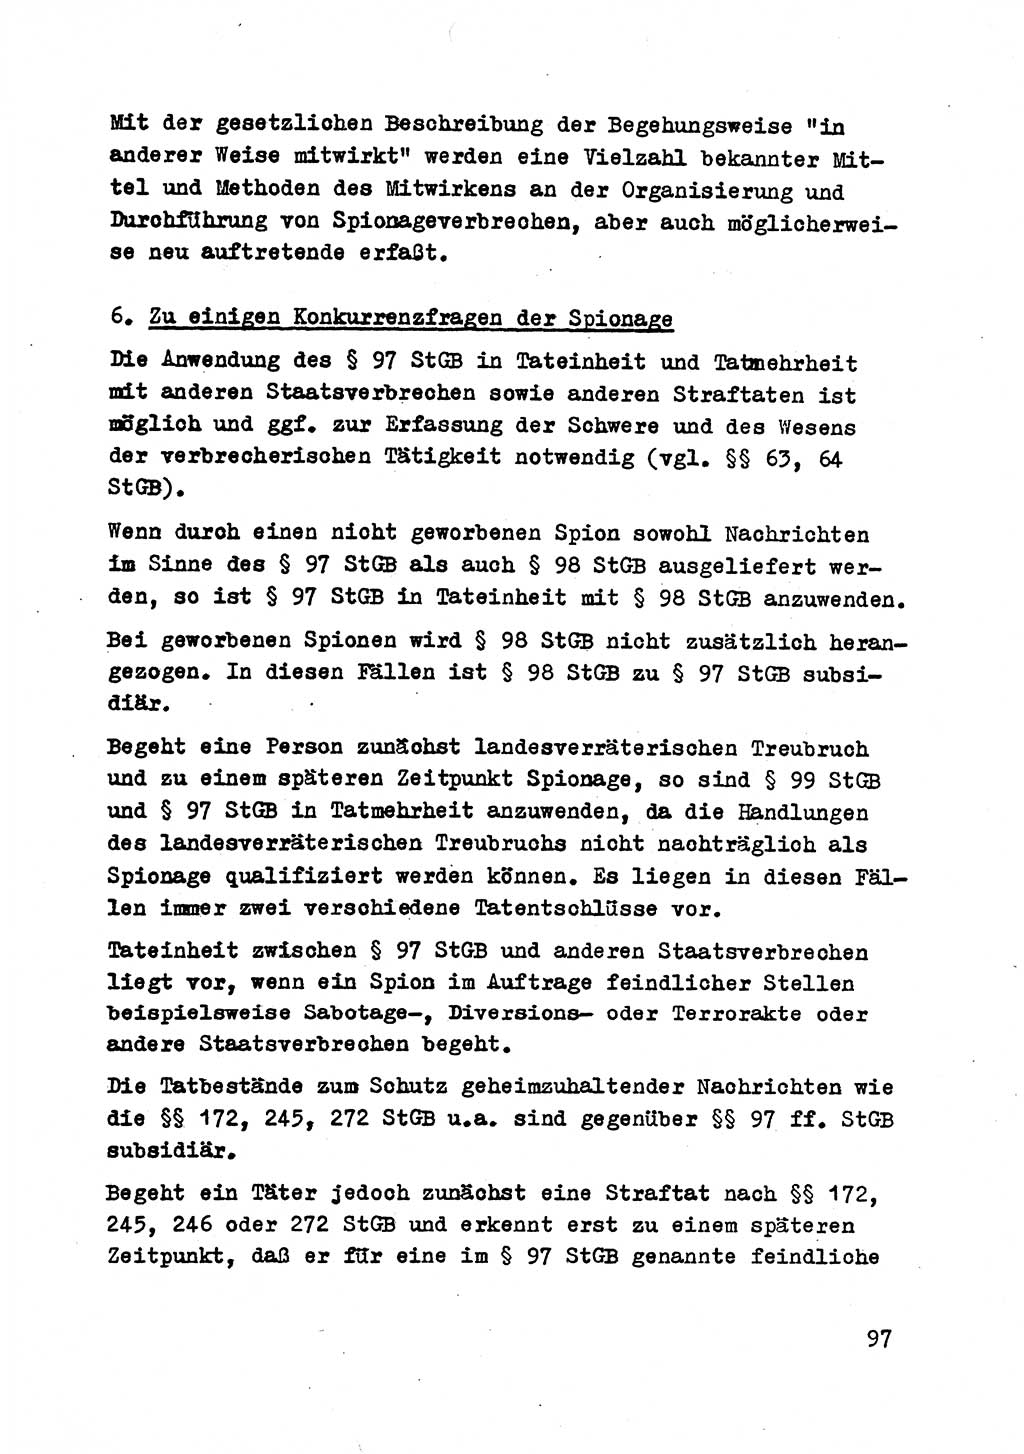 Strafrecht der DDR (Deutsche Demokratische Republik), Besonderer Teil, Lehrmaterial, Heft 2 1969, Seite 97 (Strafr. DDR BT Lehrmat. H. 2 1969, S. 97)